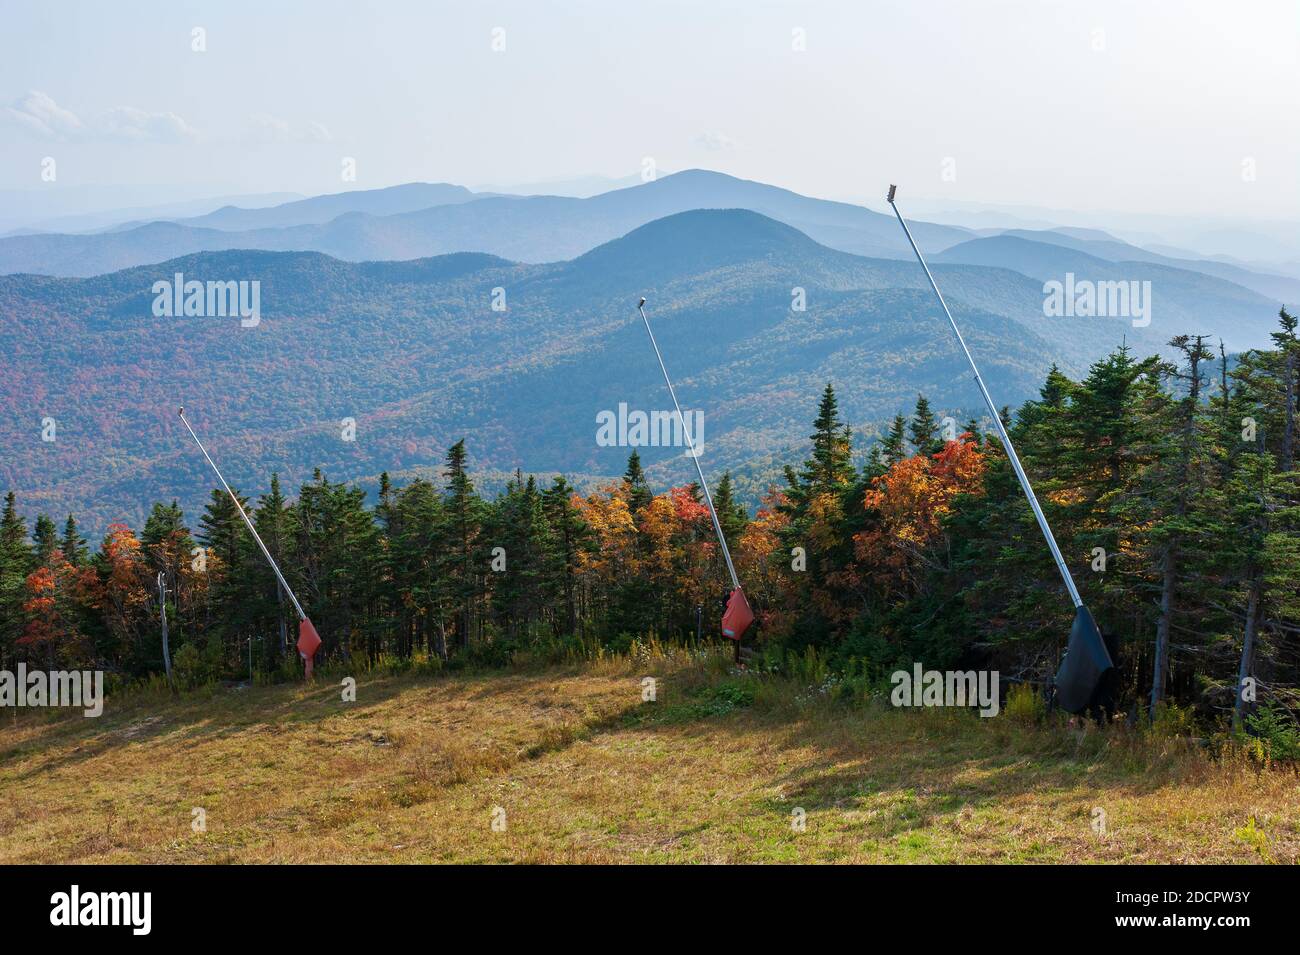 Ridgeview Skipiste in Stowe, VT, USA. Schnee Schnürsenkel säumen die Piste. Gemischter Wald mit Bäumen, die im Herbst ihre Farbe ändern. Dunstig über den Ausläufern Stockfoto